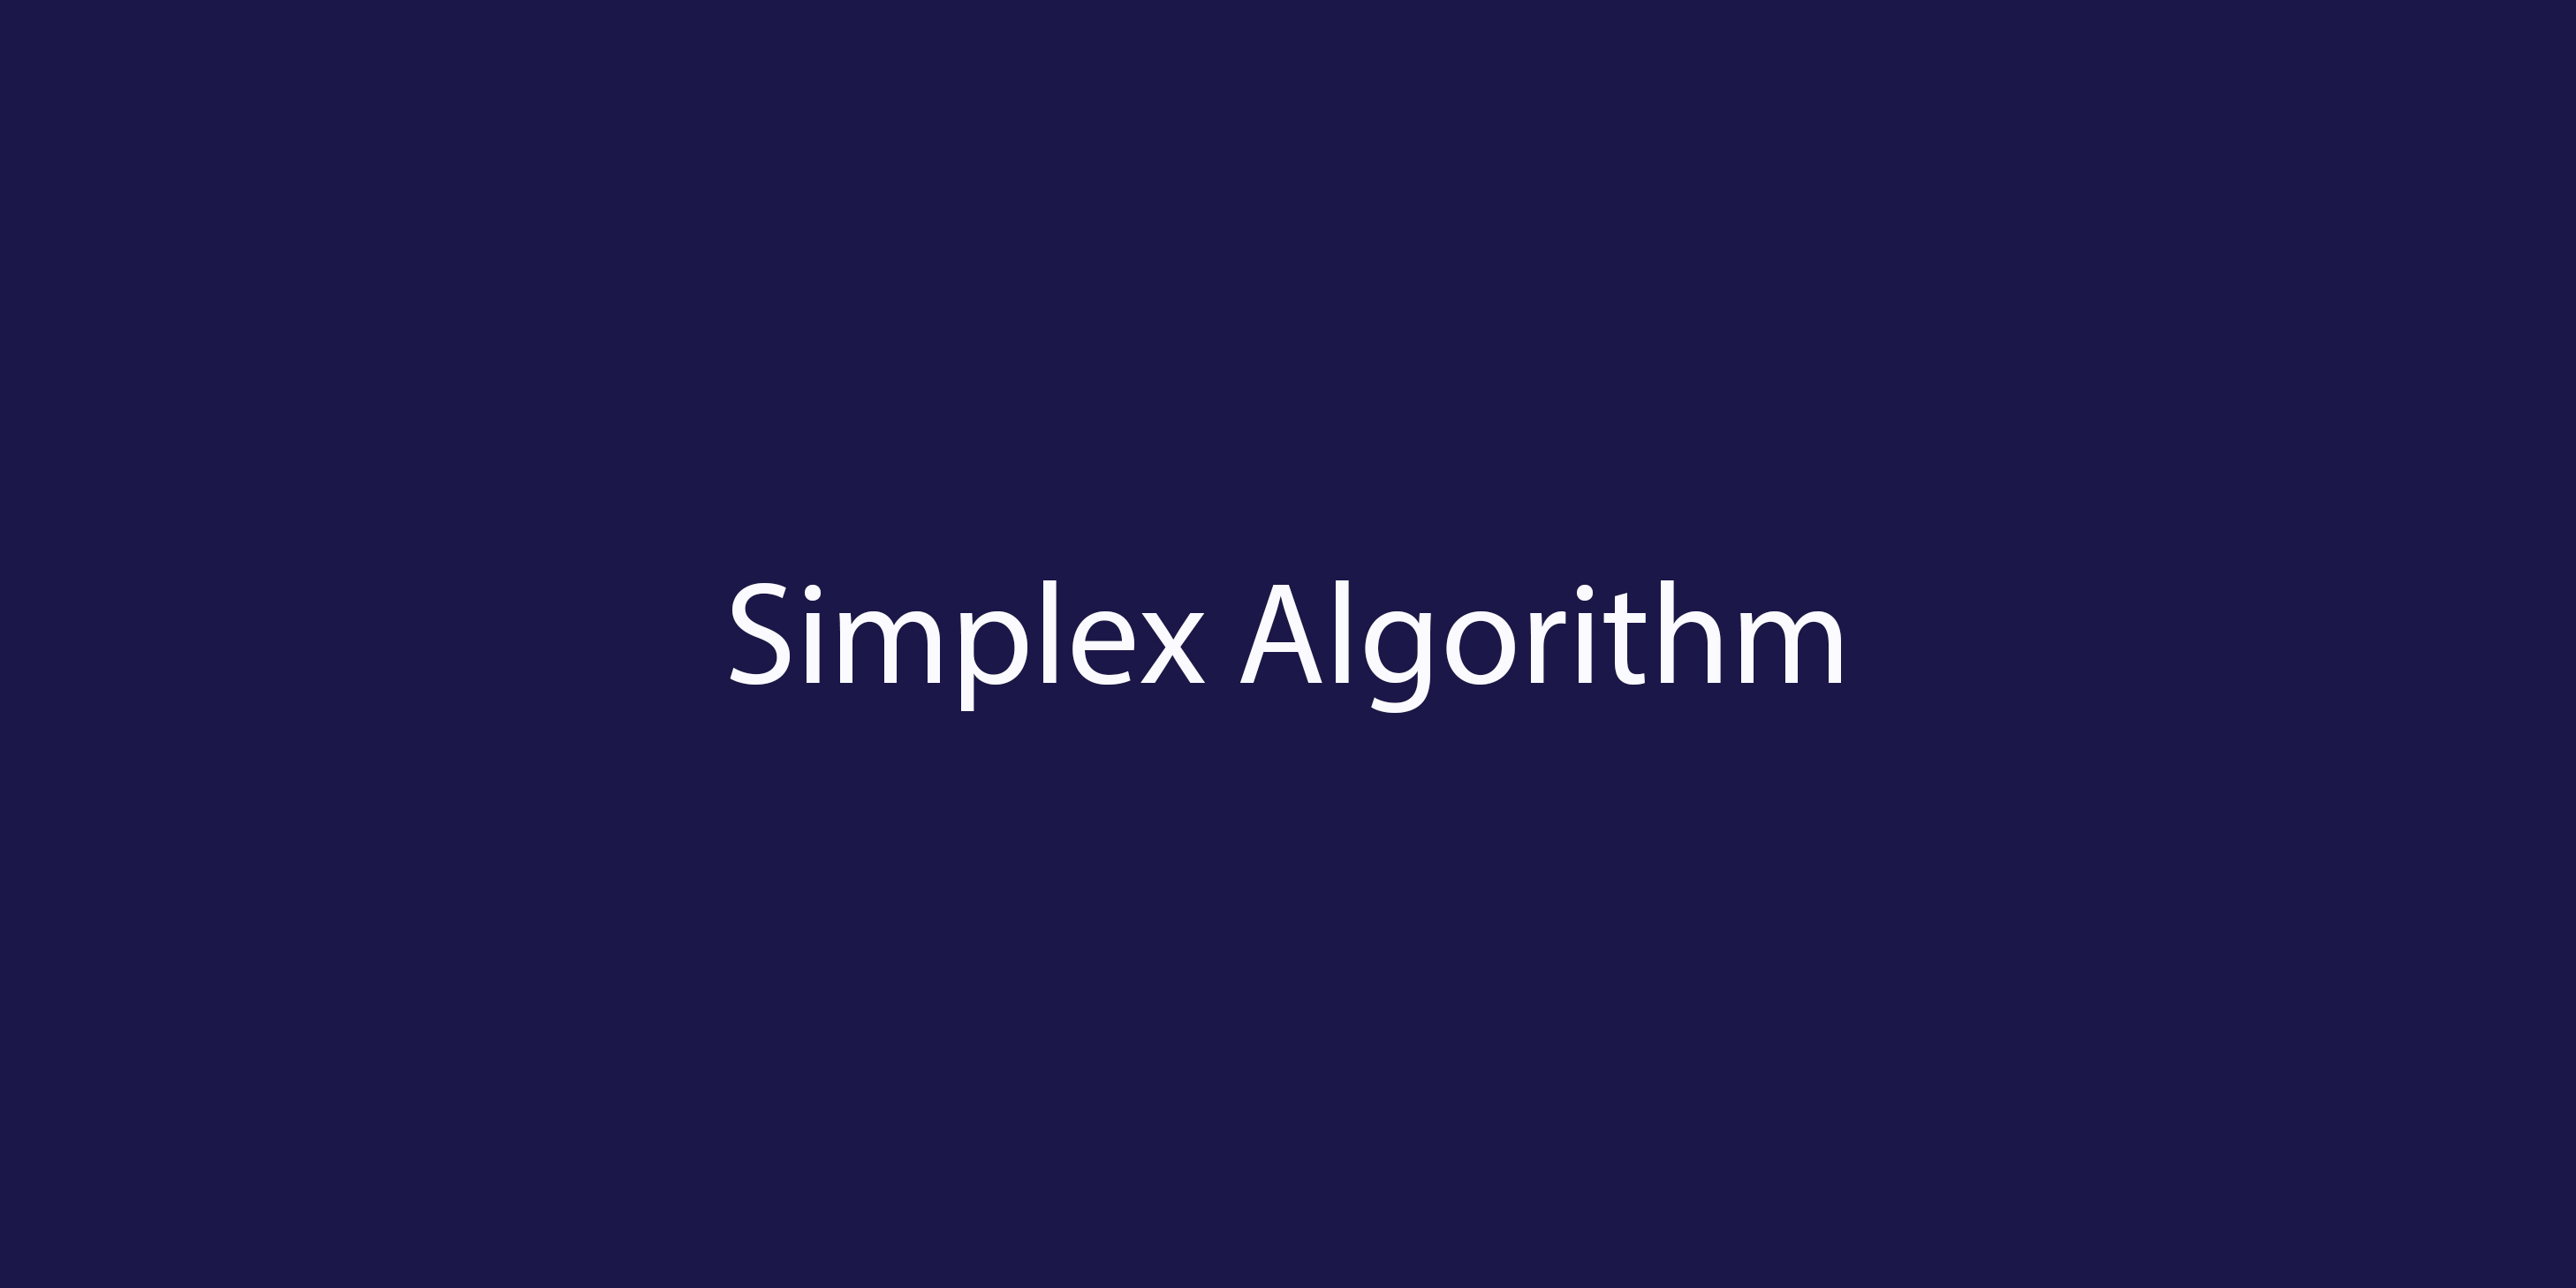 Implementation of Simplex Algorithm